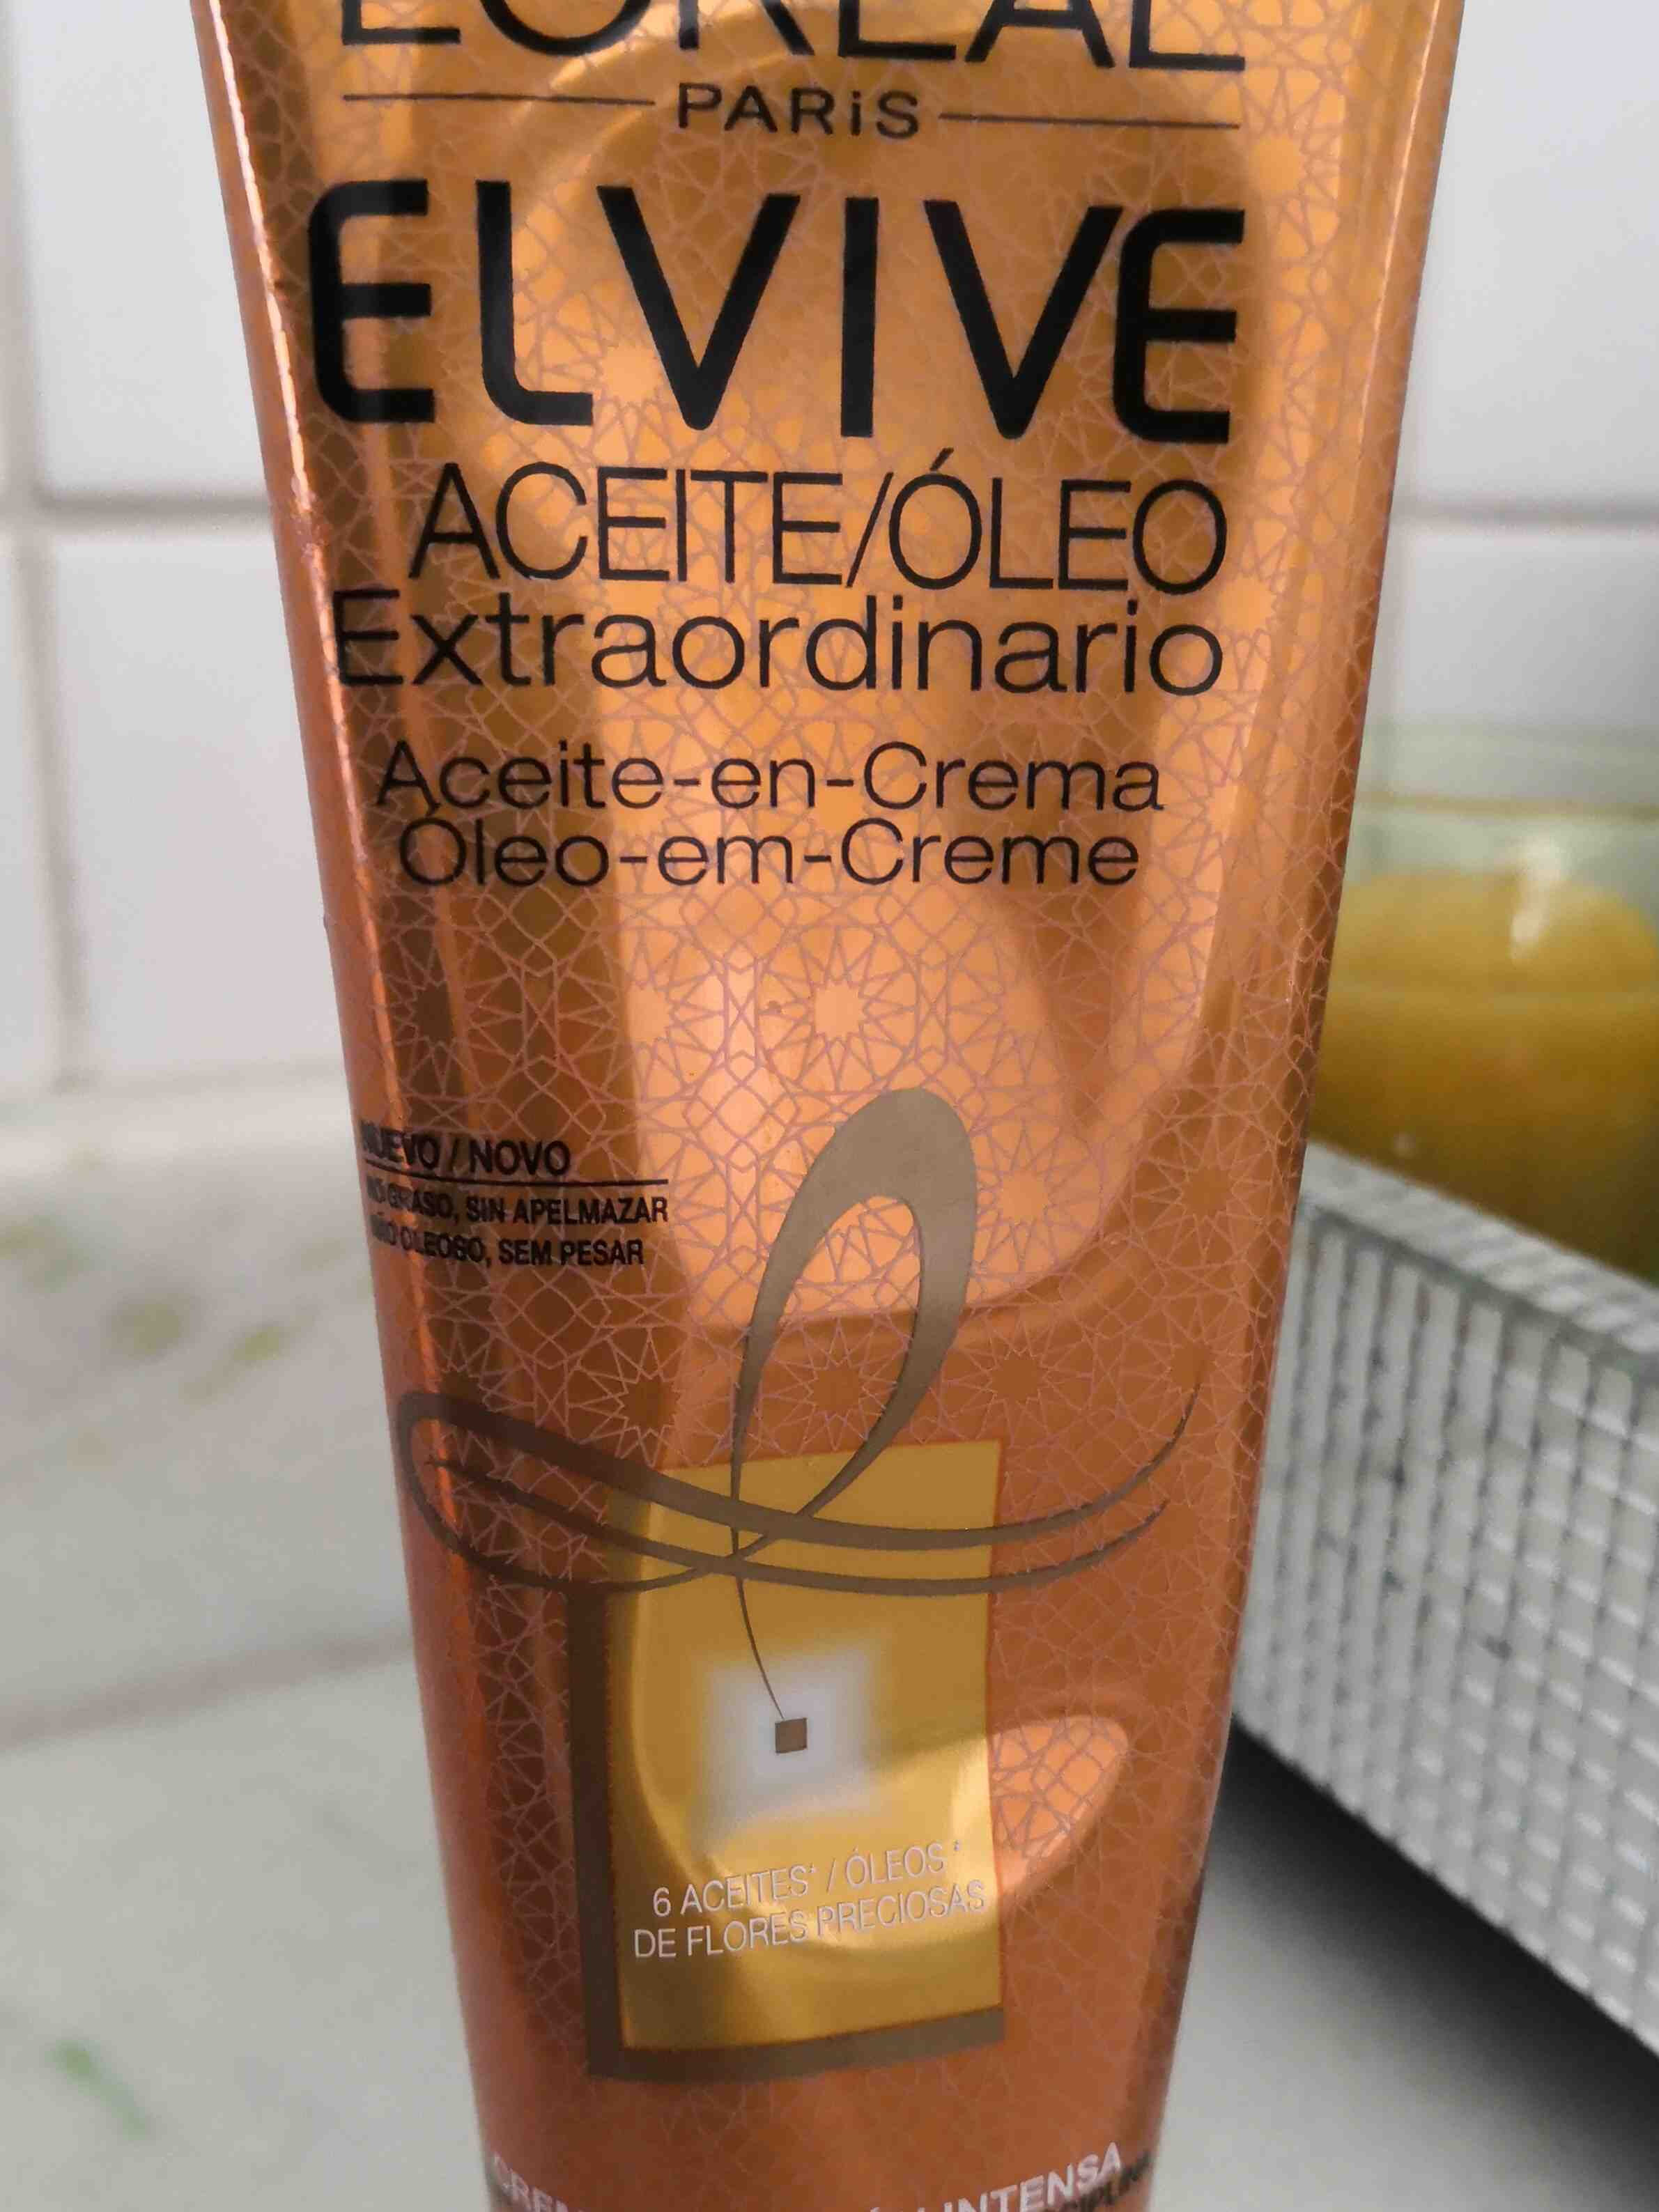 Elvive Aceite Extraordinario - Produit - en